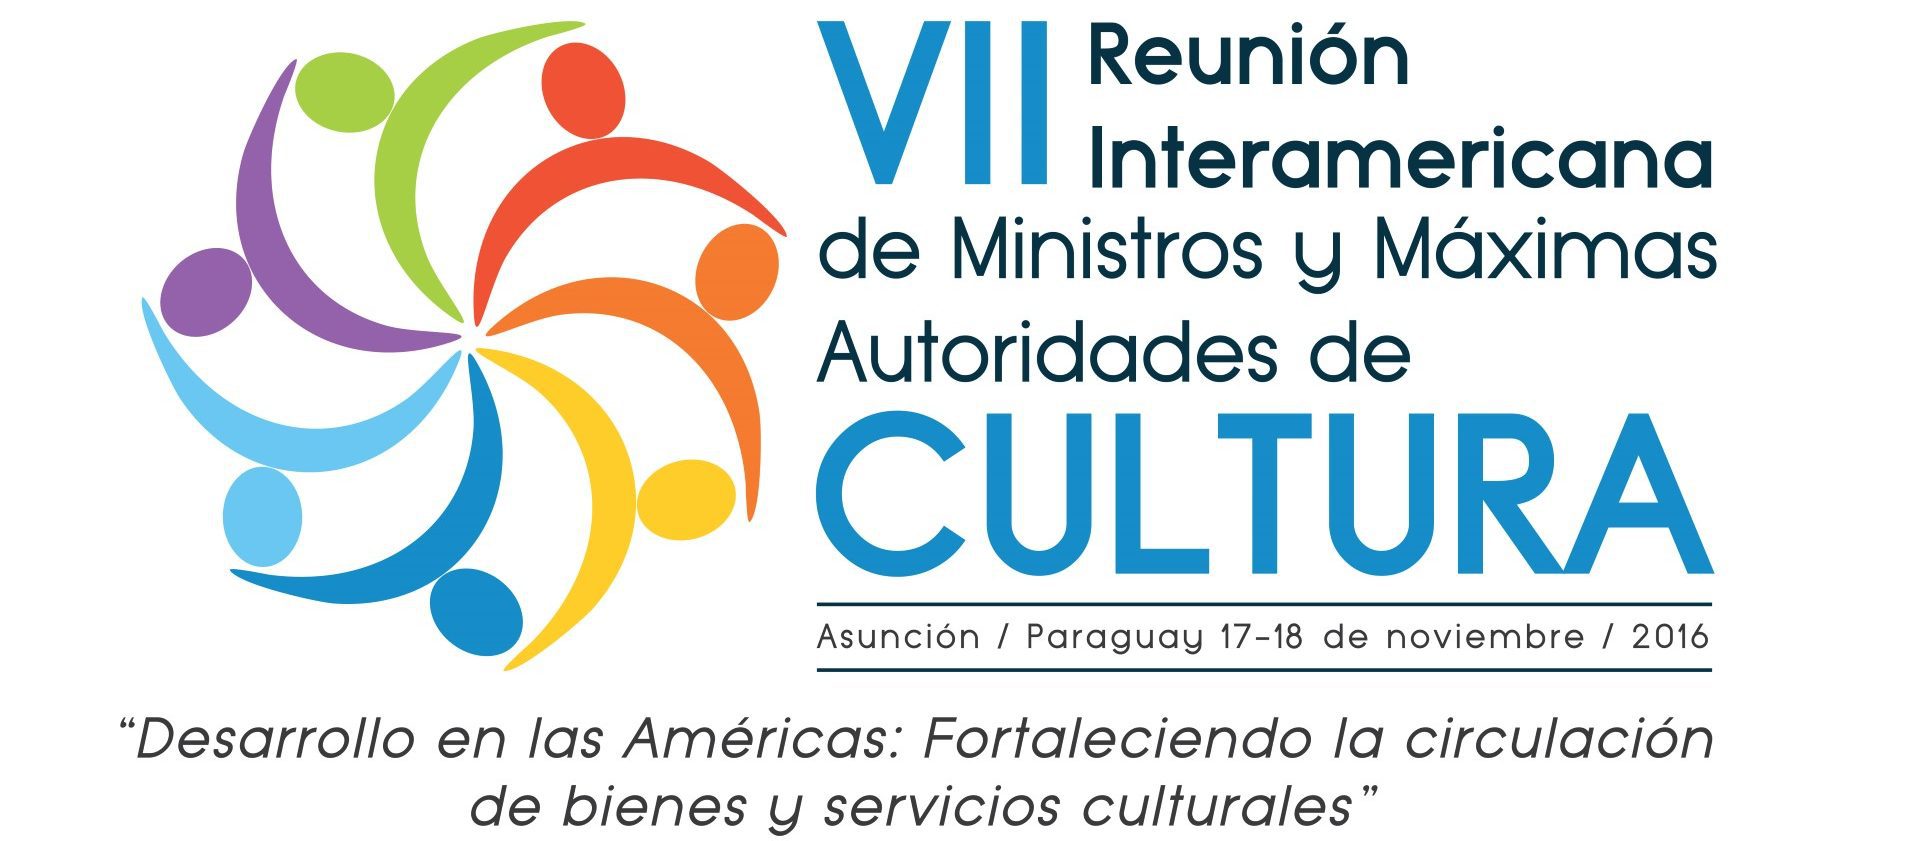 Asunción se prepara para Ministerial de la OEA y Semana de la Cultura imagen